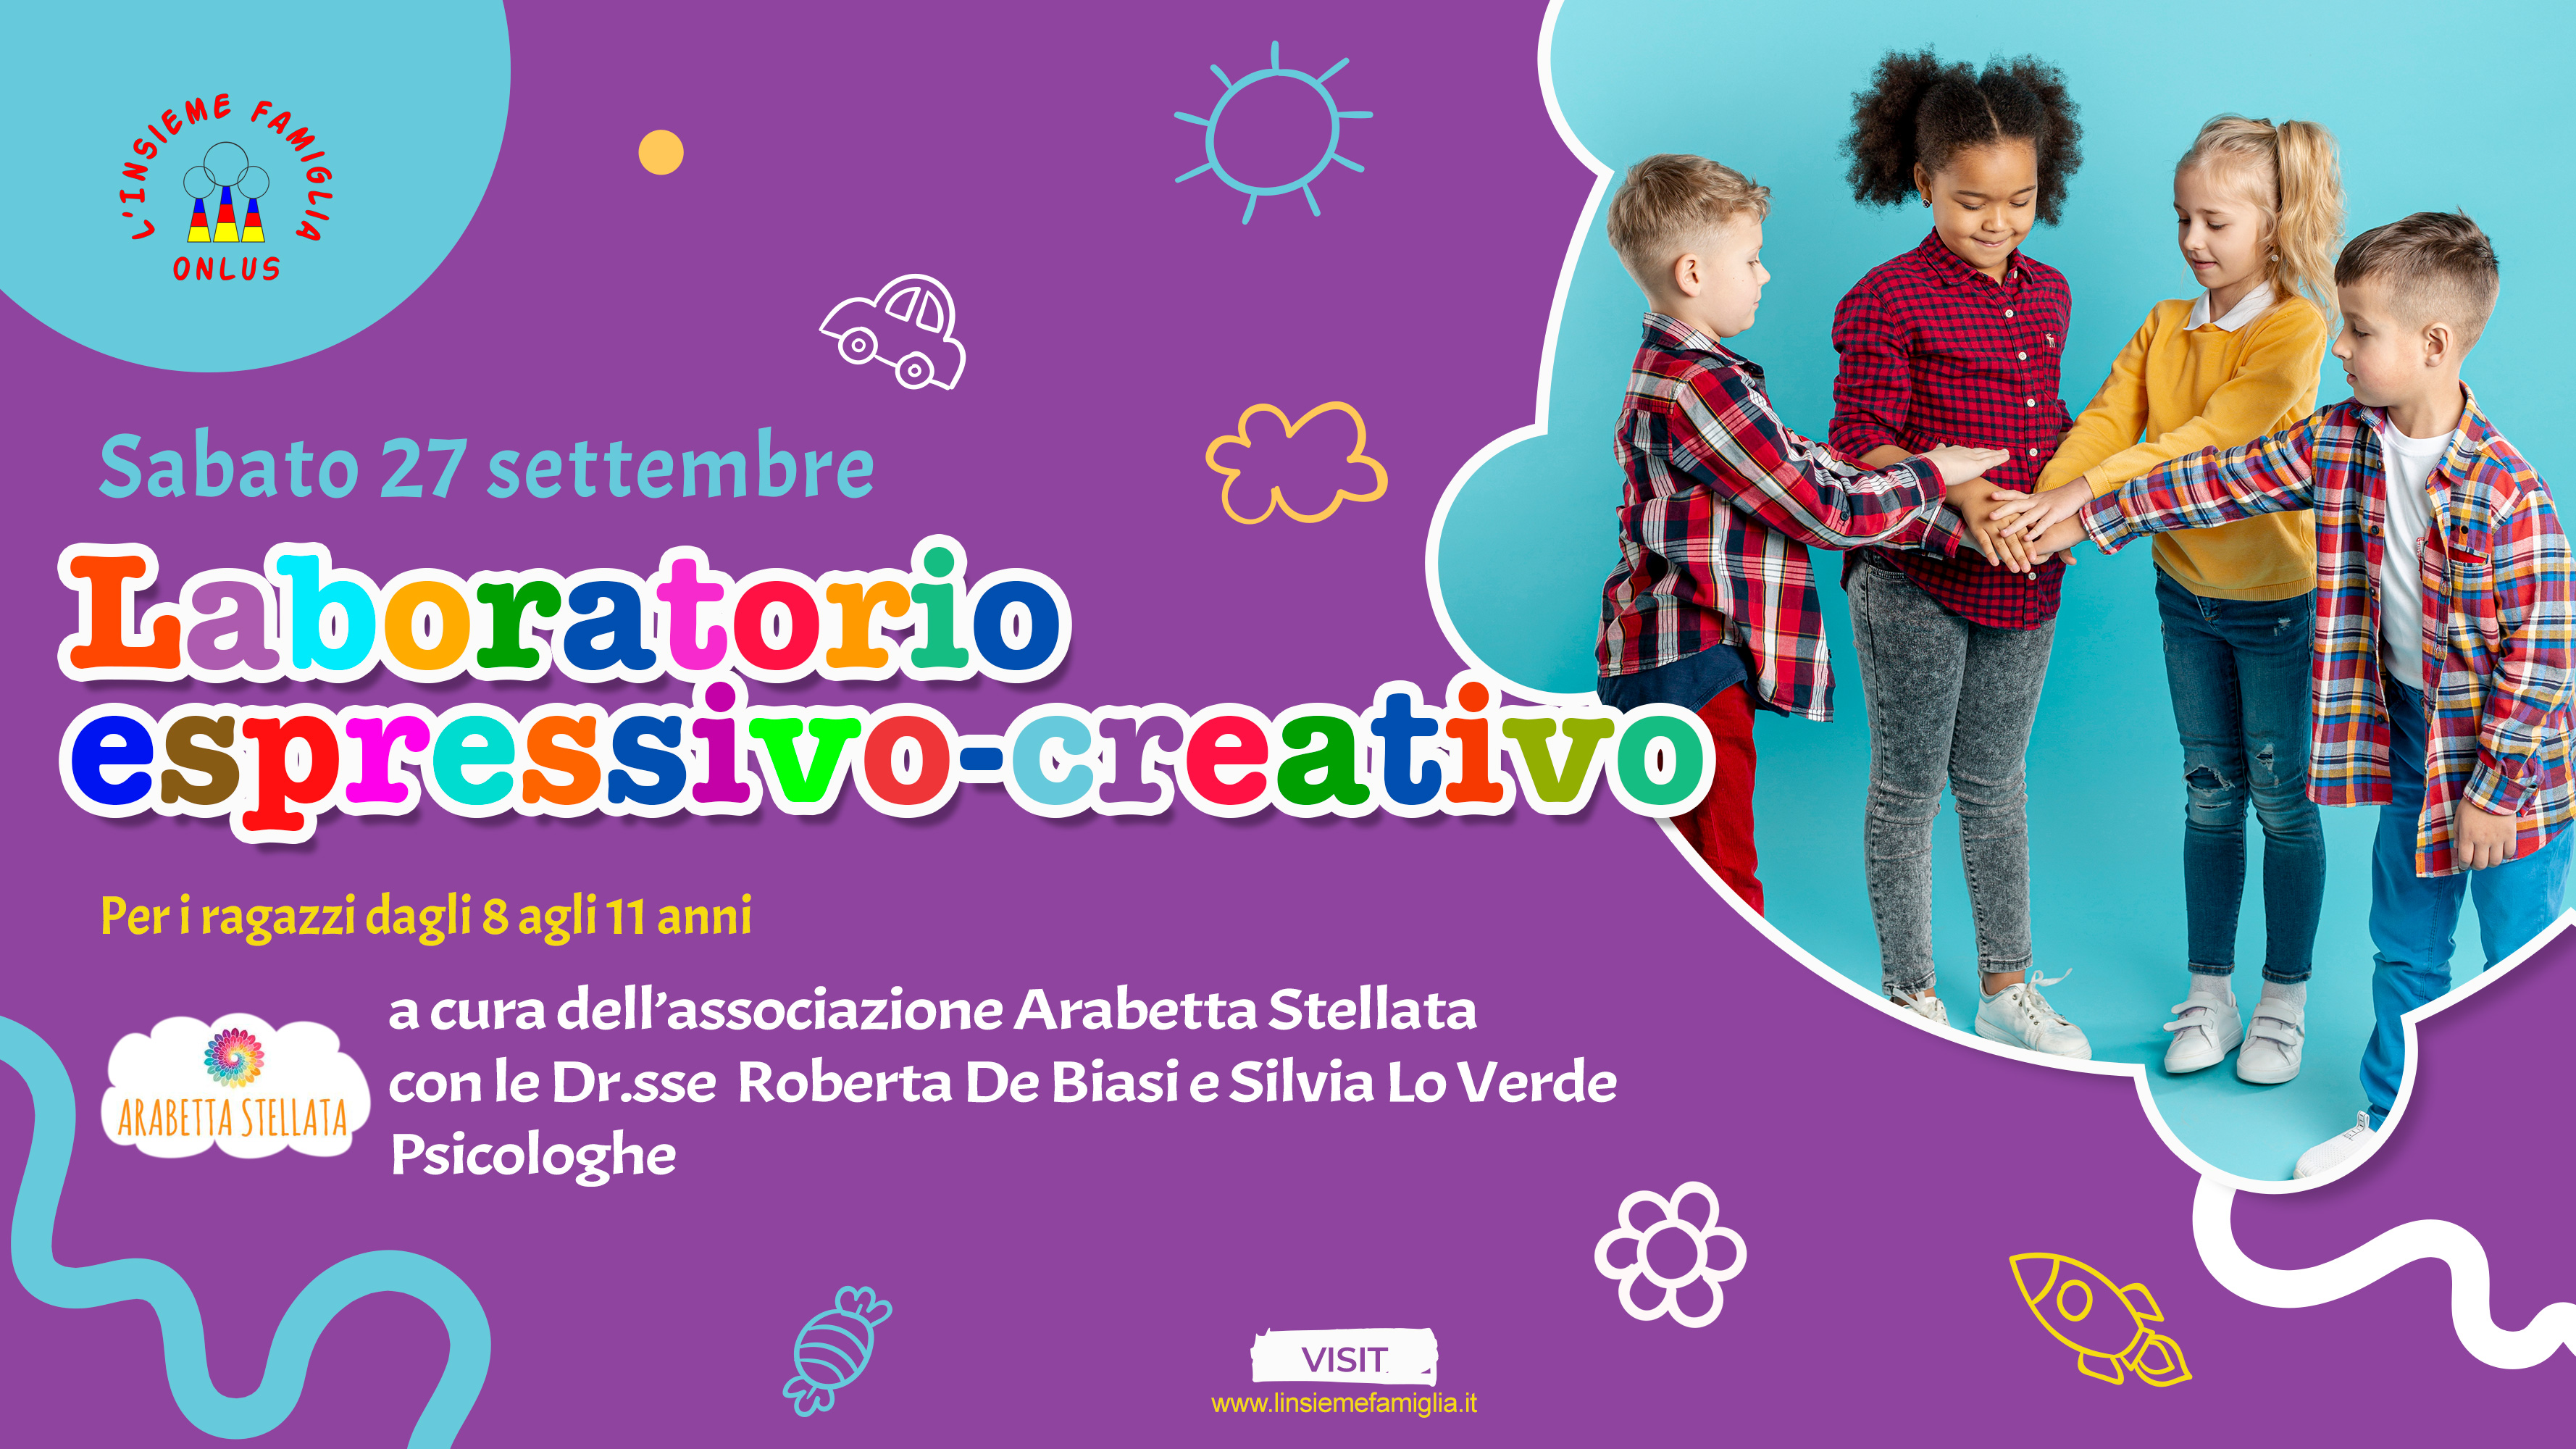 Visual design Project Event 'Laboratorio espressivo-creativo ragazzi' L'Insieme Famiglia ONLUS